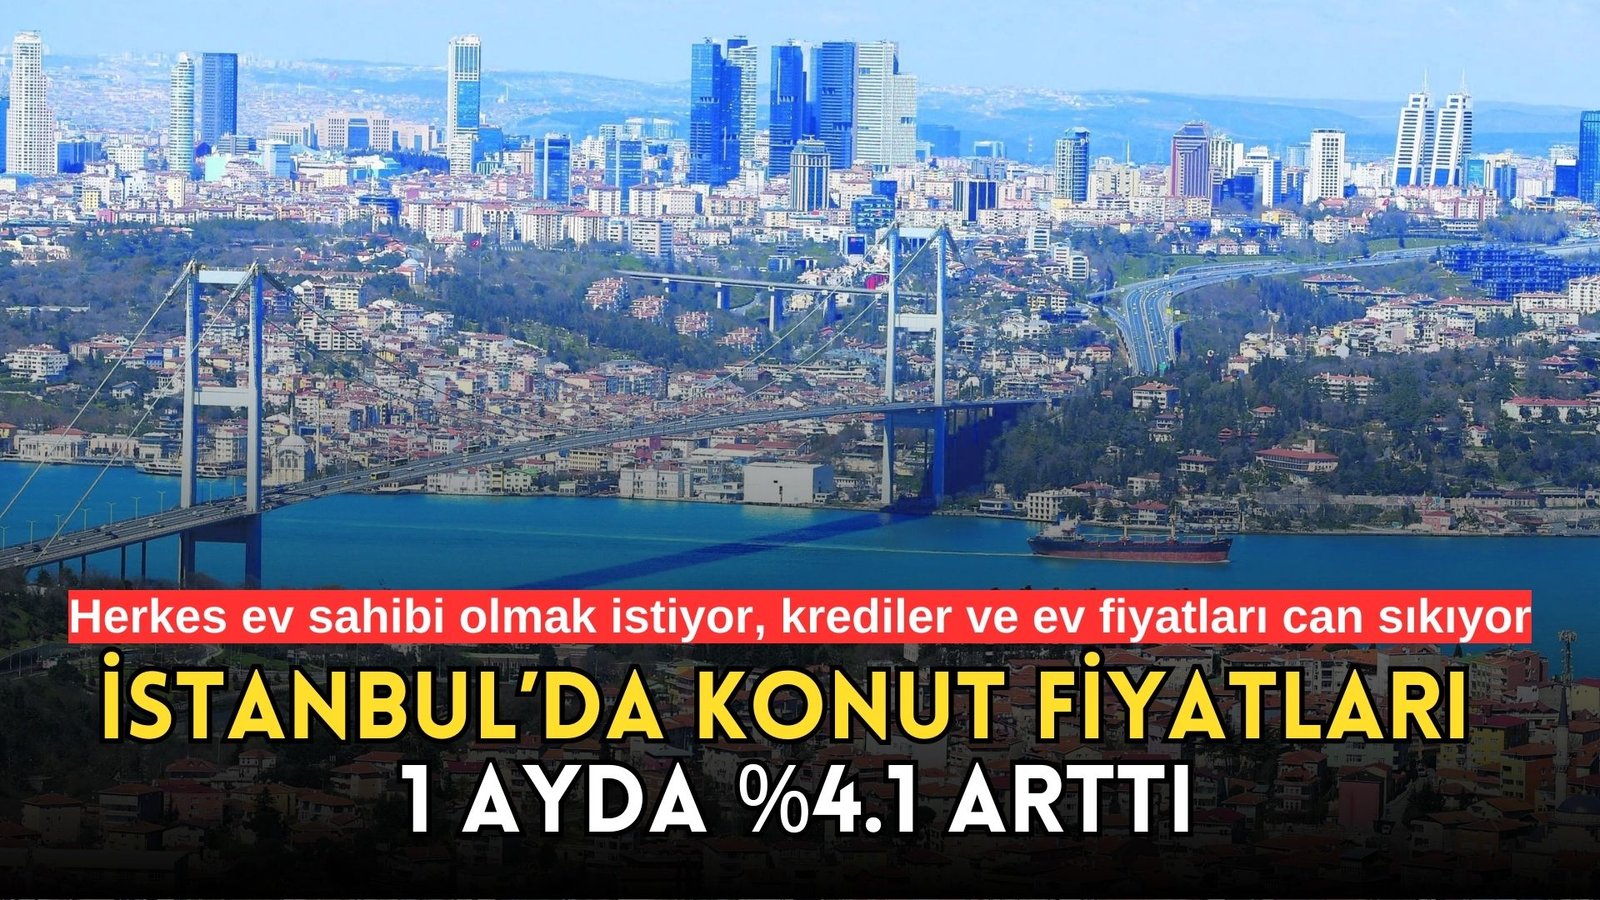 İstanbul konut fiyatları son havadis